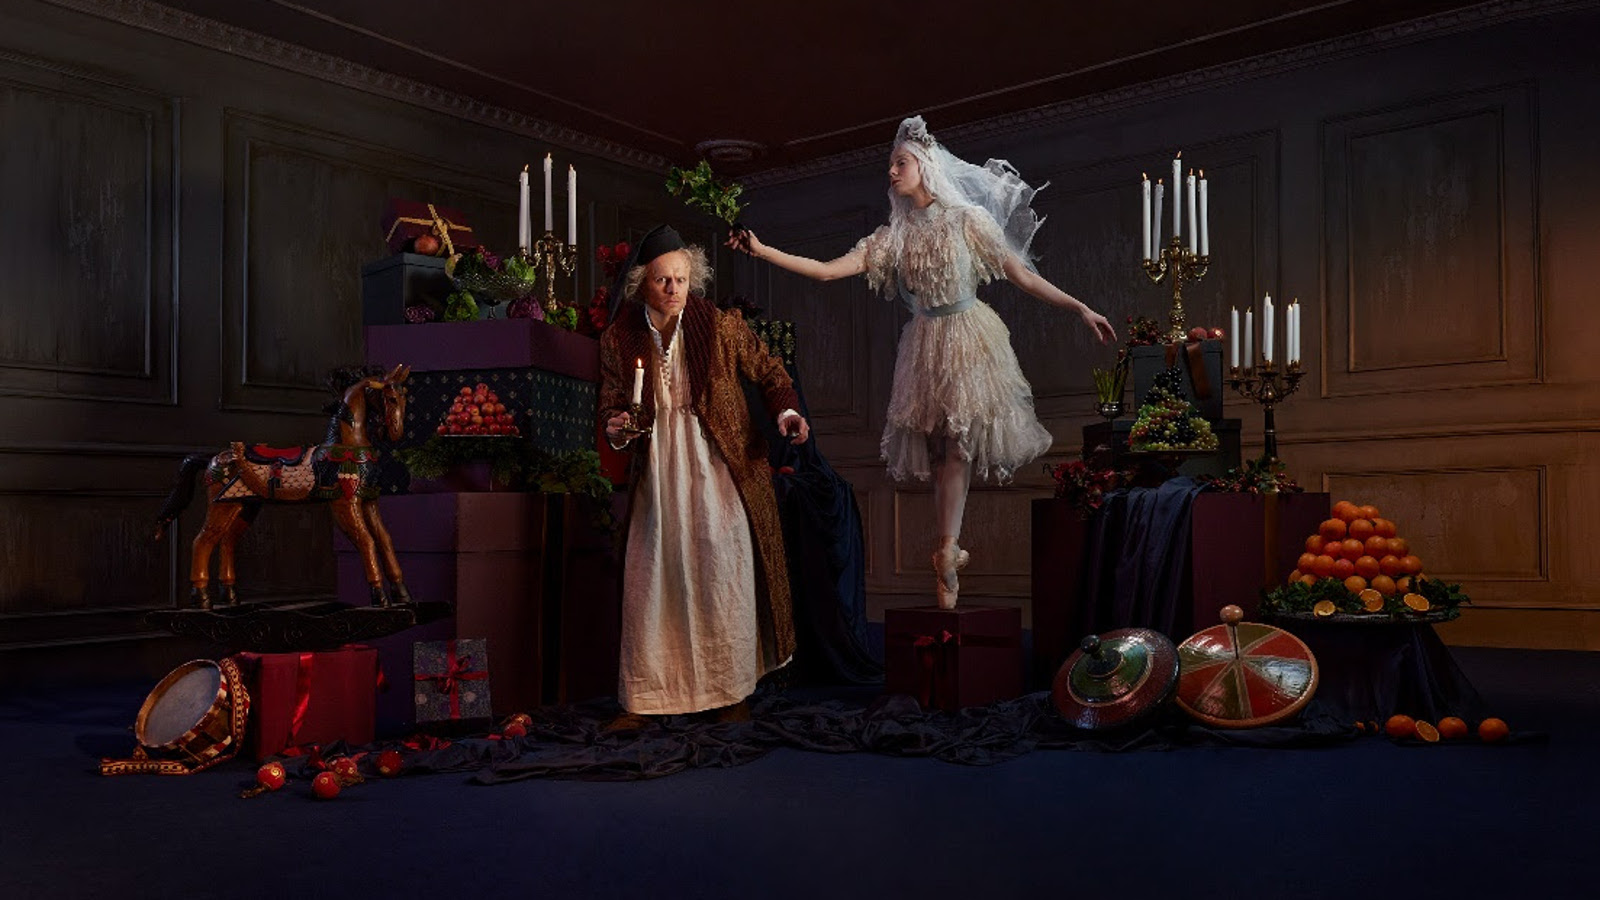 Kuvassa ovat tummassa huoneessa saituri Scrooge ja hänestä vinosti yläpuolella ballerina valkoisessa puvussa. Huoneessa on hedelmiä ja kynttilöitä.